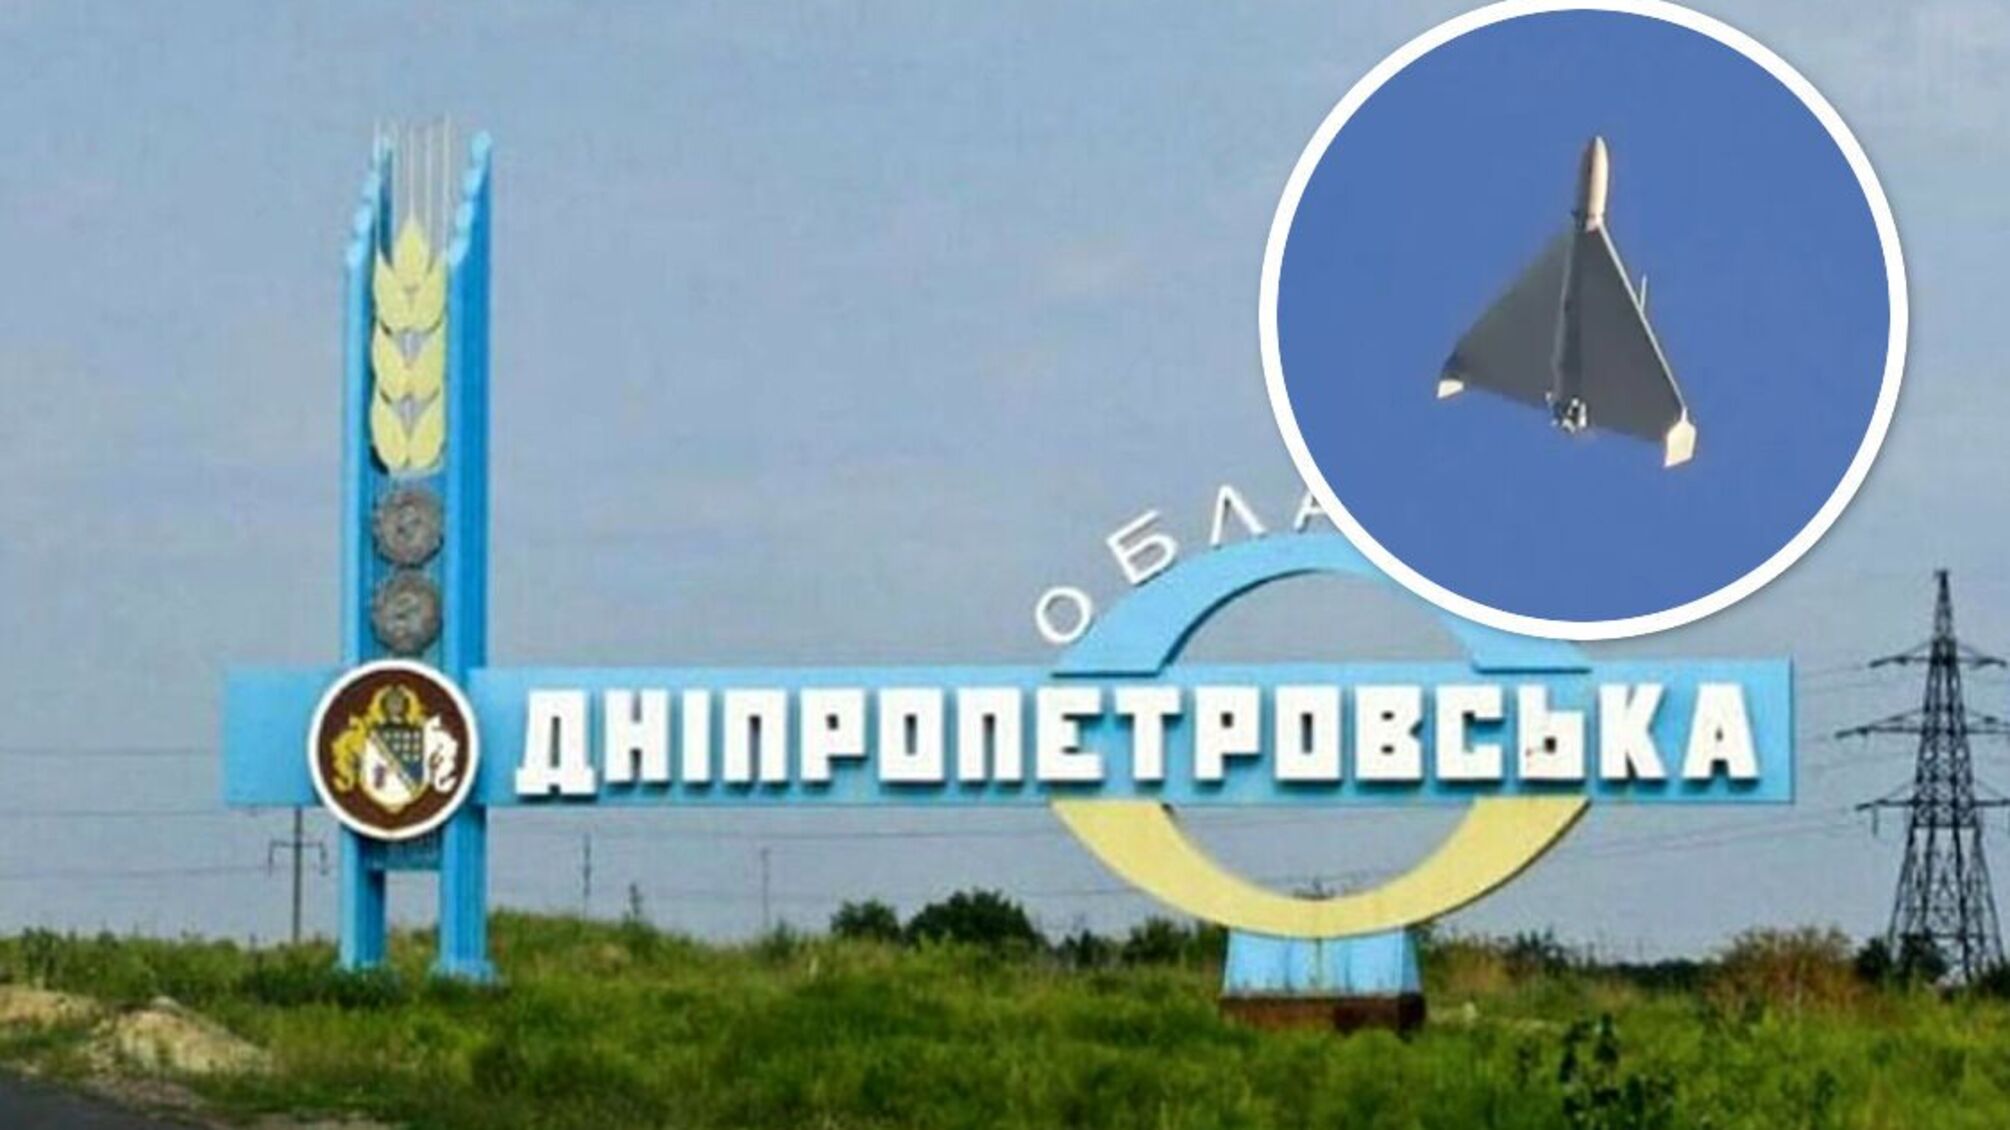 Дніпропетровська область - атака 'Шахедів'